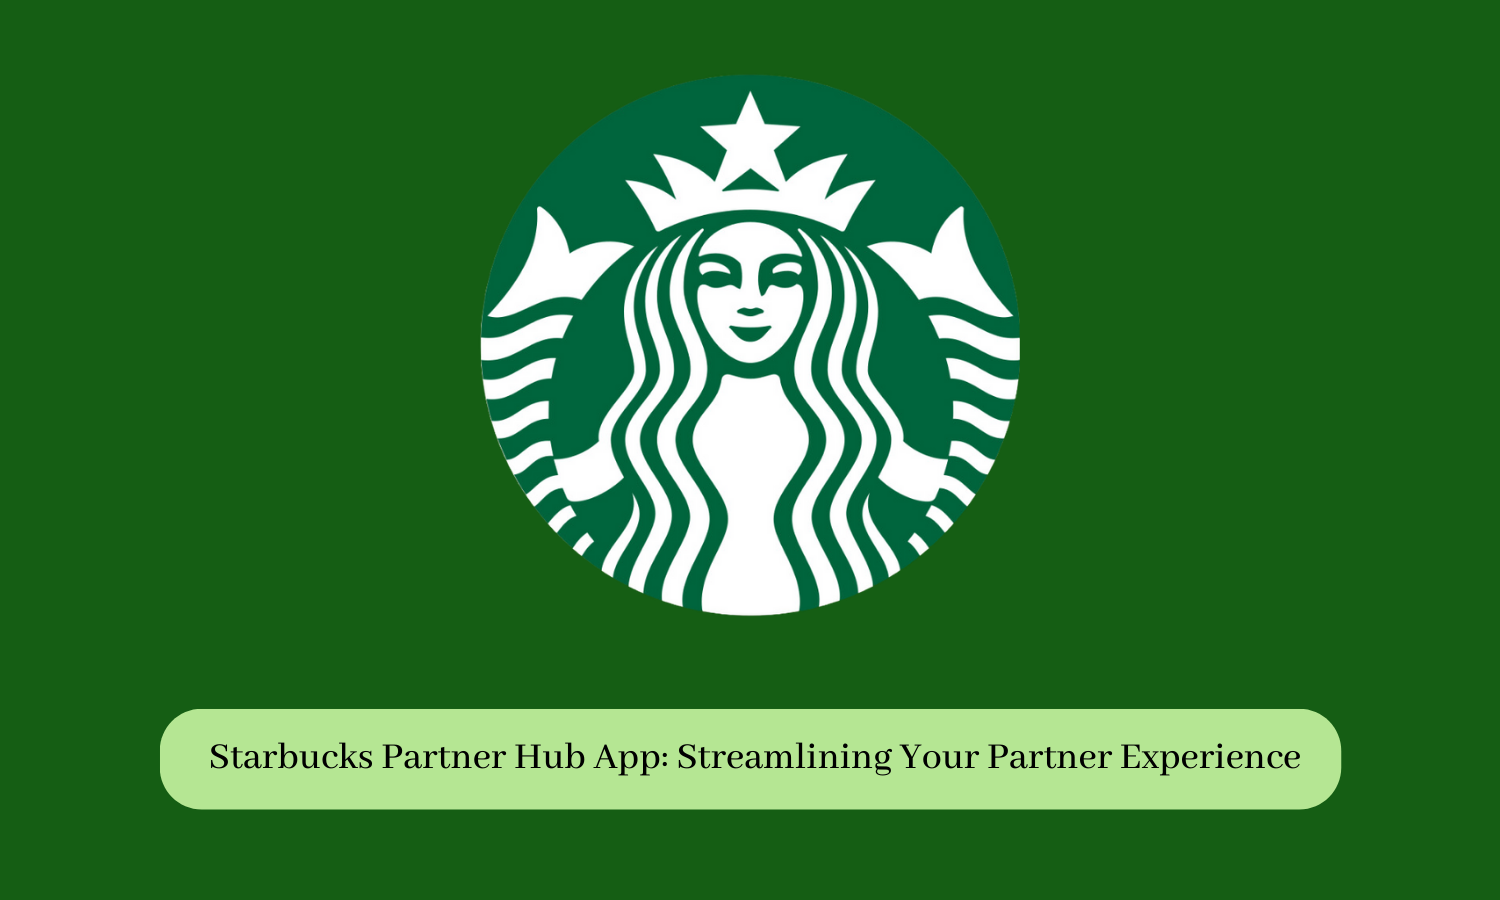 Starbucks Partner Hub App: Streamlining Your Partner Experience